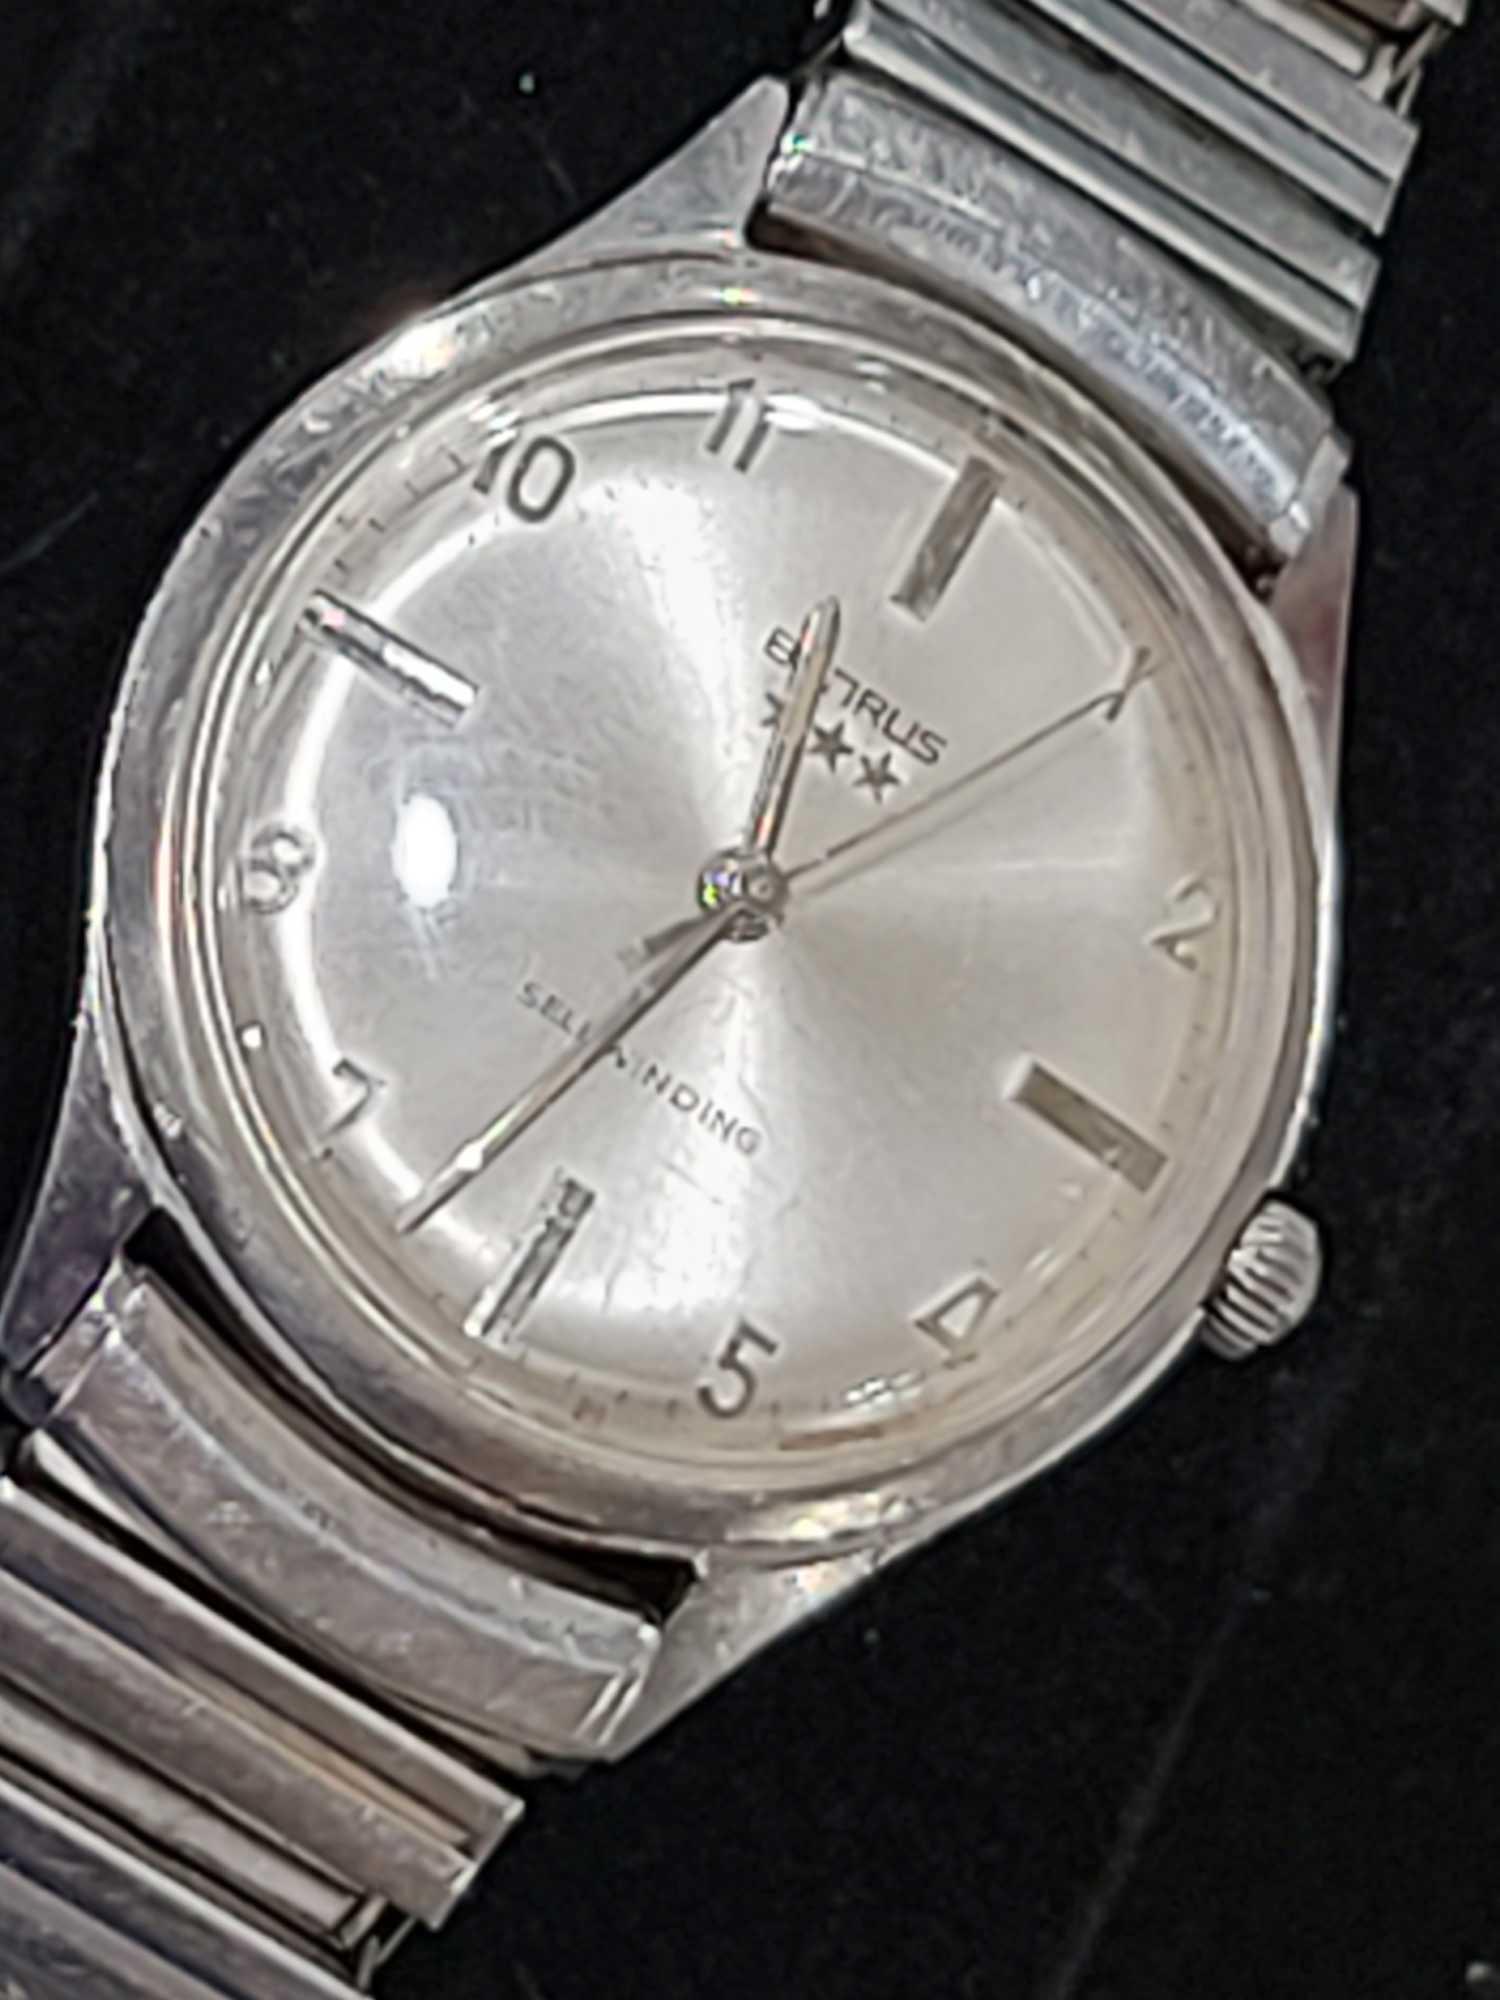 Benrus early vintage, Selfwinding, Waterproof, Dustproof, Men's Stainless Steel wristwatch